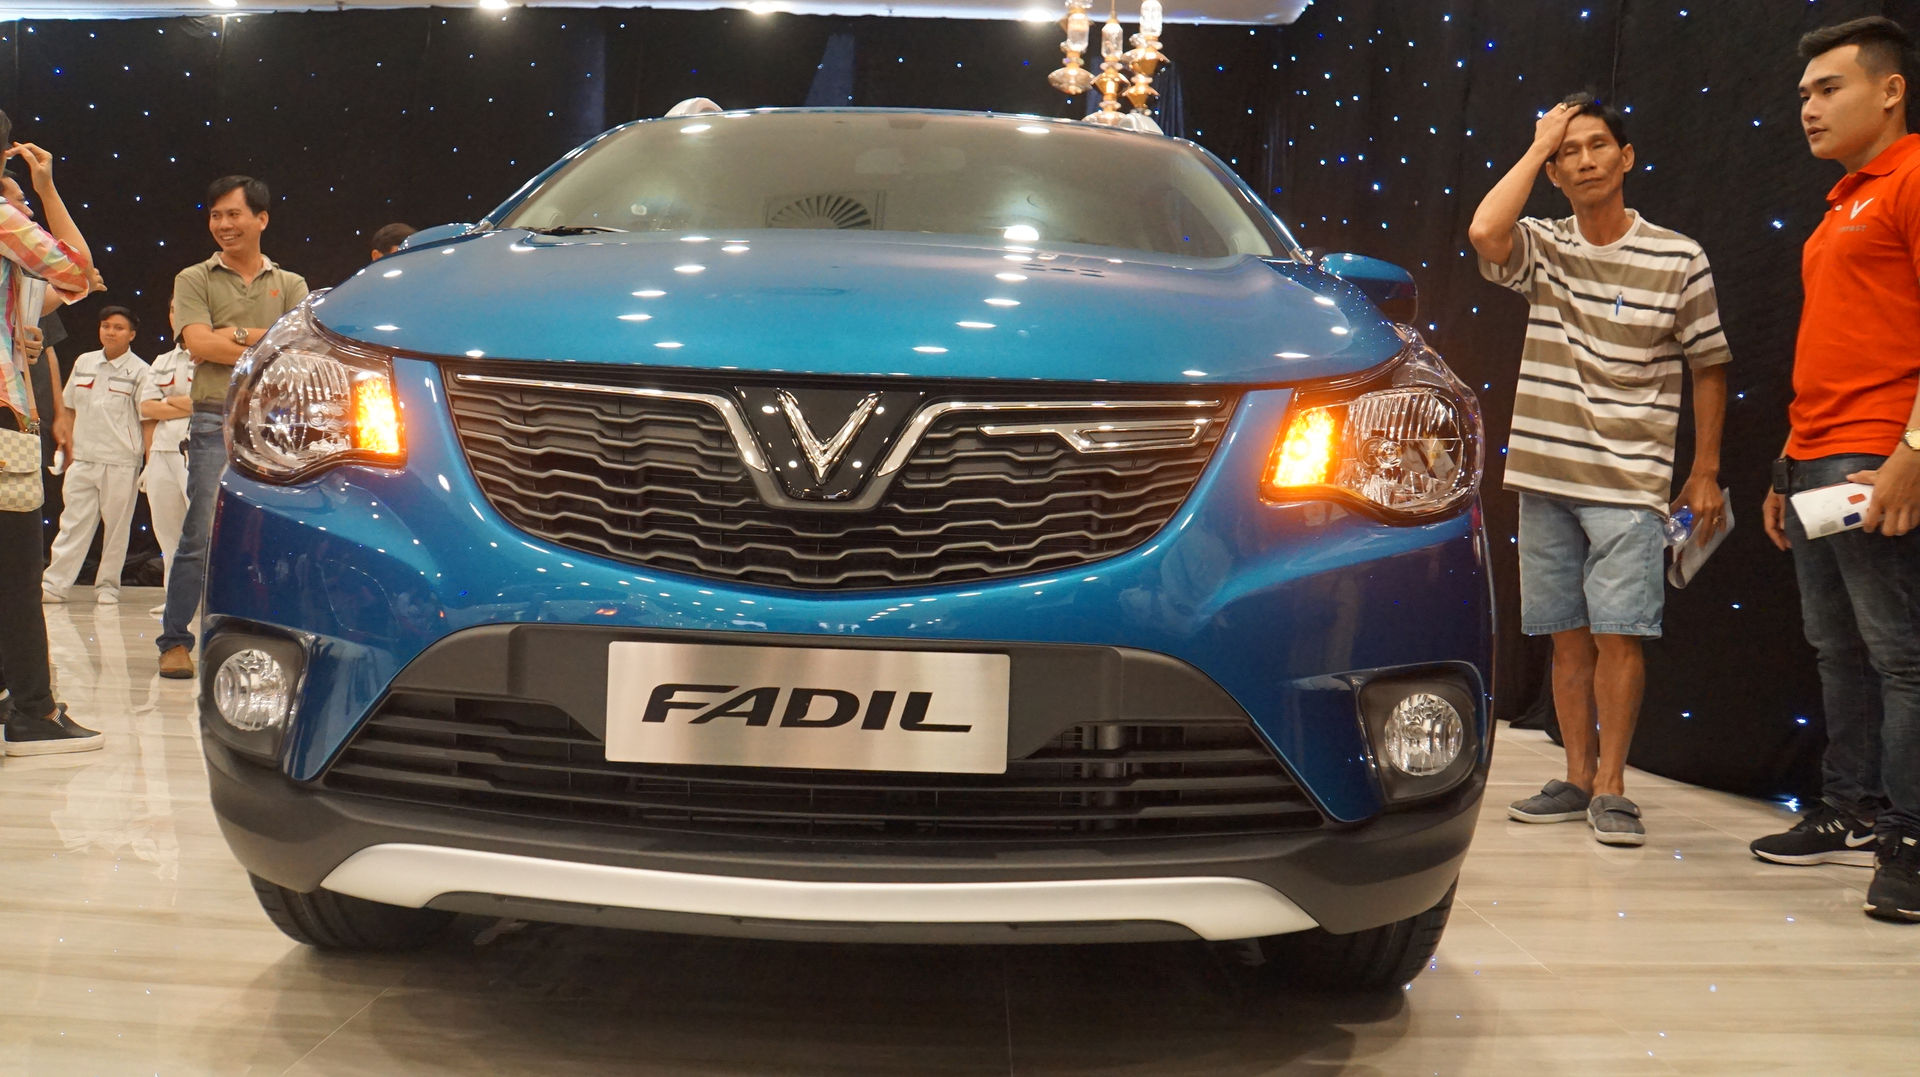 Mẫu xe Fadil được VinFast sản xuất trên nhượng quyền của GM. Có thể xem đây là mẫu xe thay thế cho Spark mà Chevrolet đã sản xuất và bán trước đó tại Việt Nam.